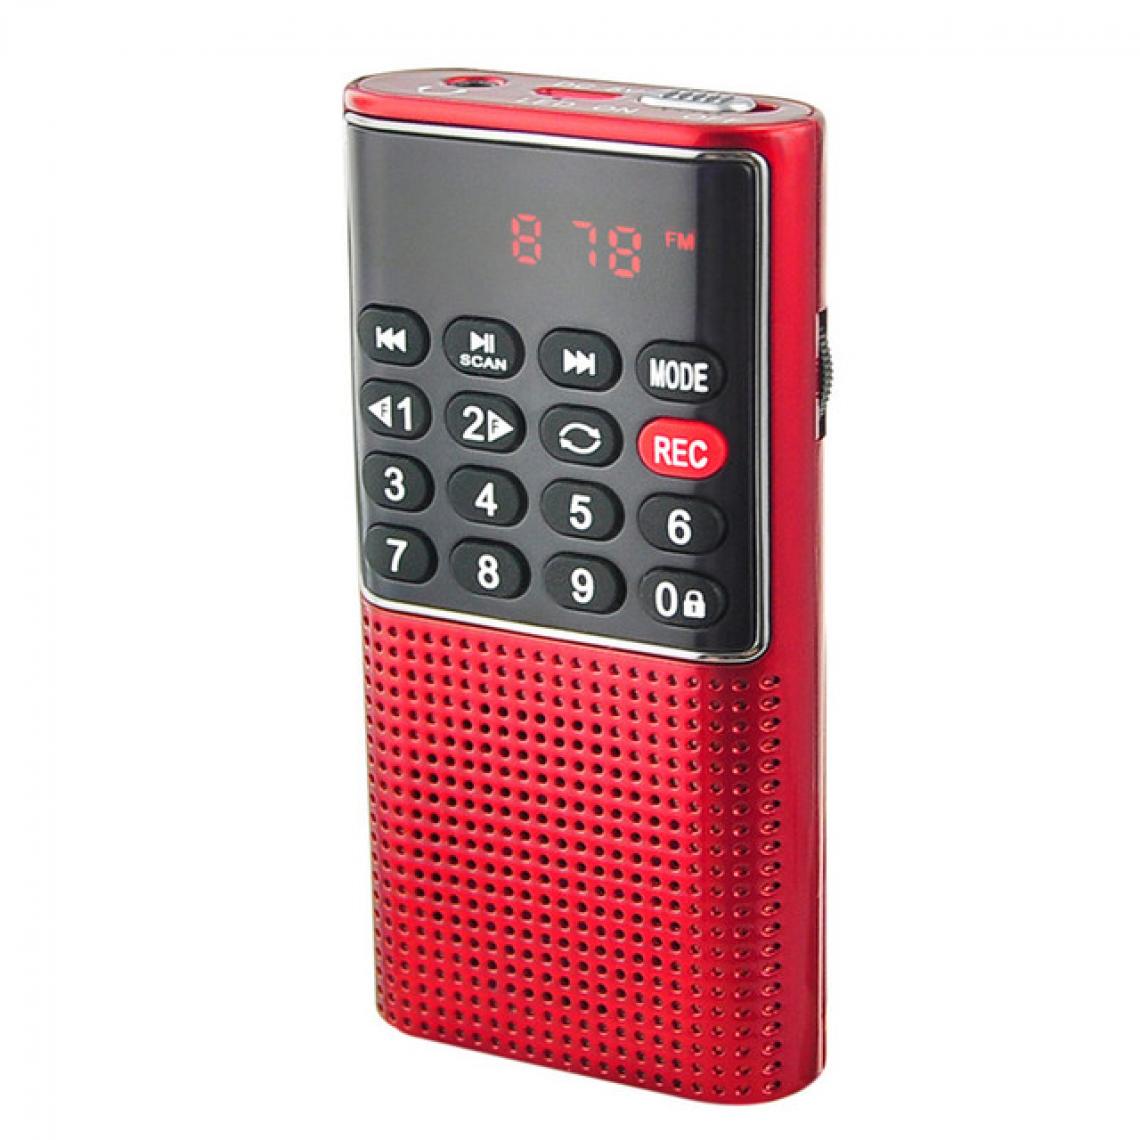 Universal - Radio portable portable numérique FM USB TF lecteur MP3 récepteur radio DC 5V 0.5A haut-parleur avec magnétophone(Rouge) - Radio